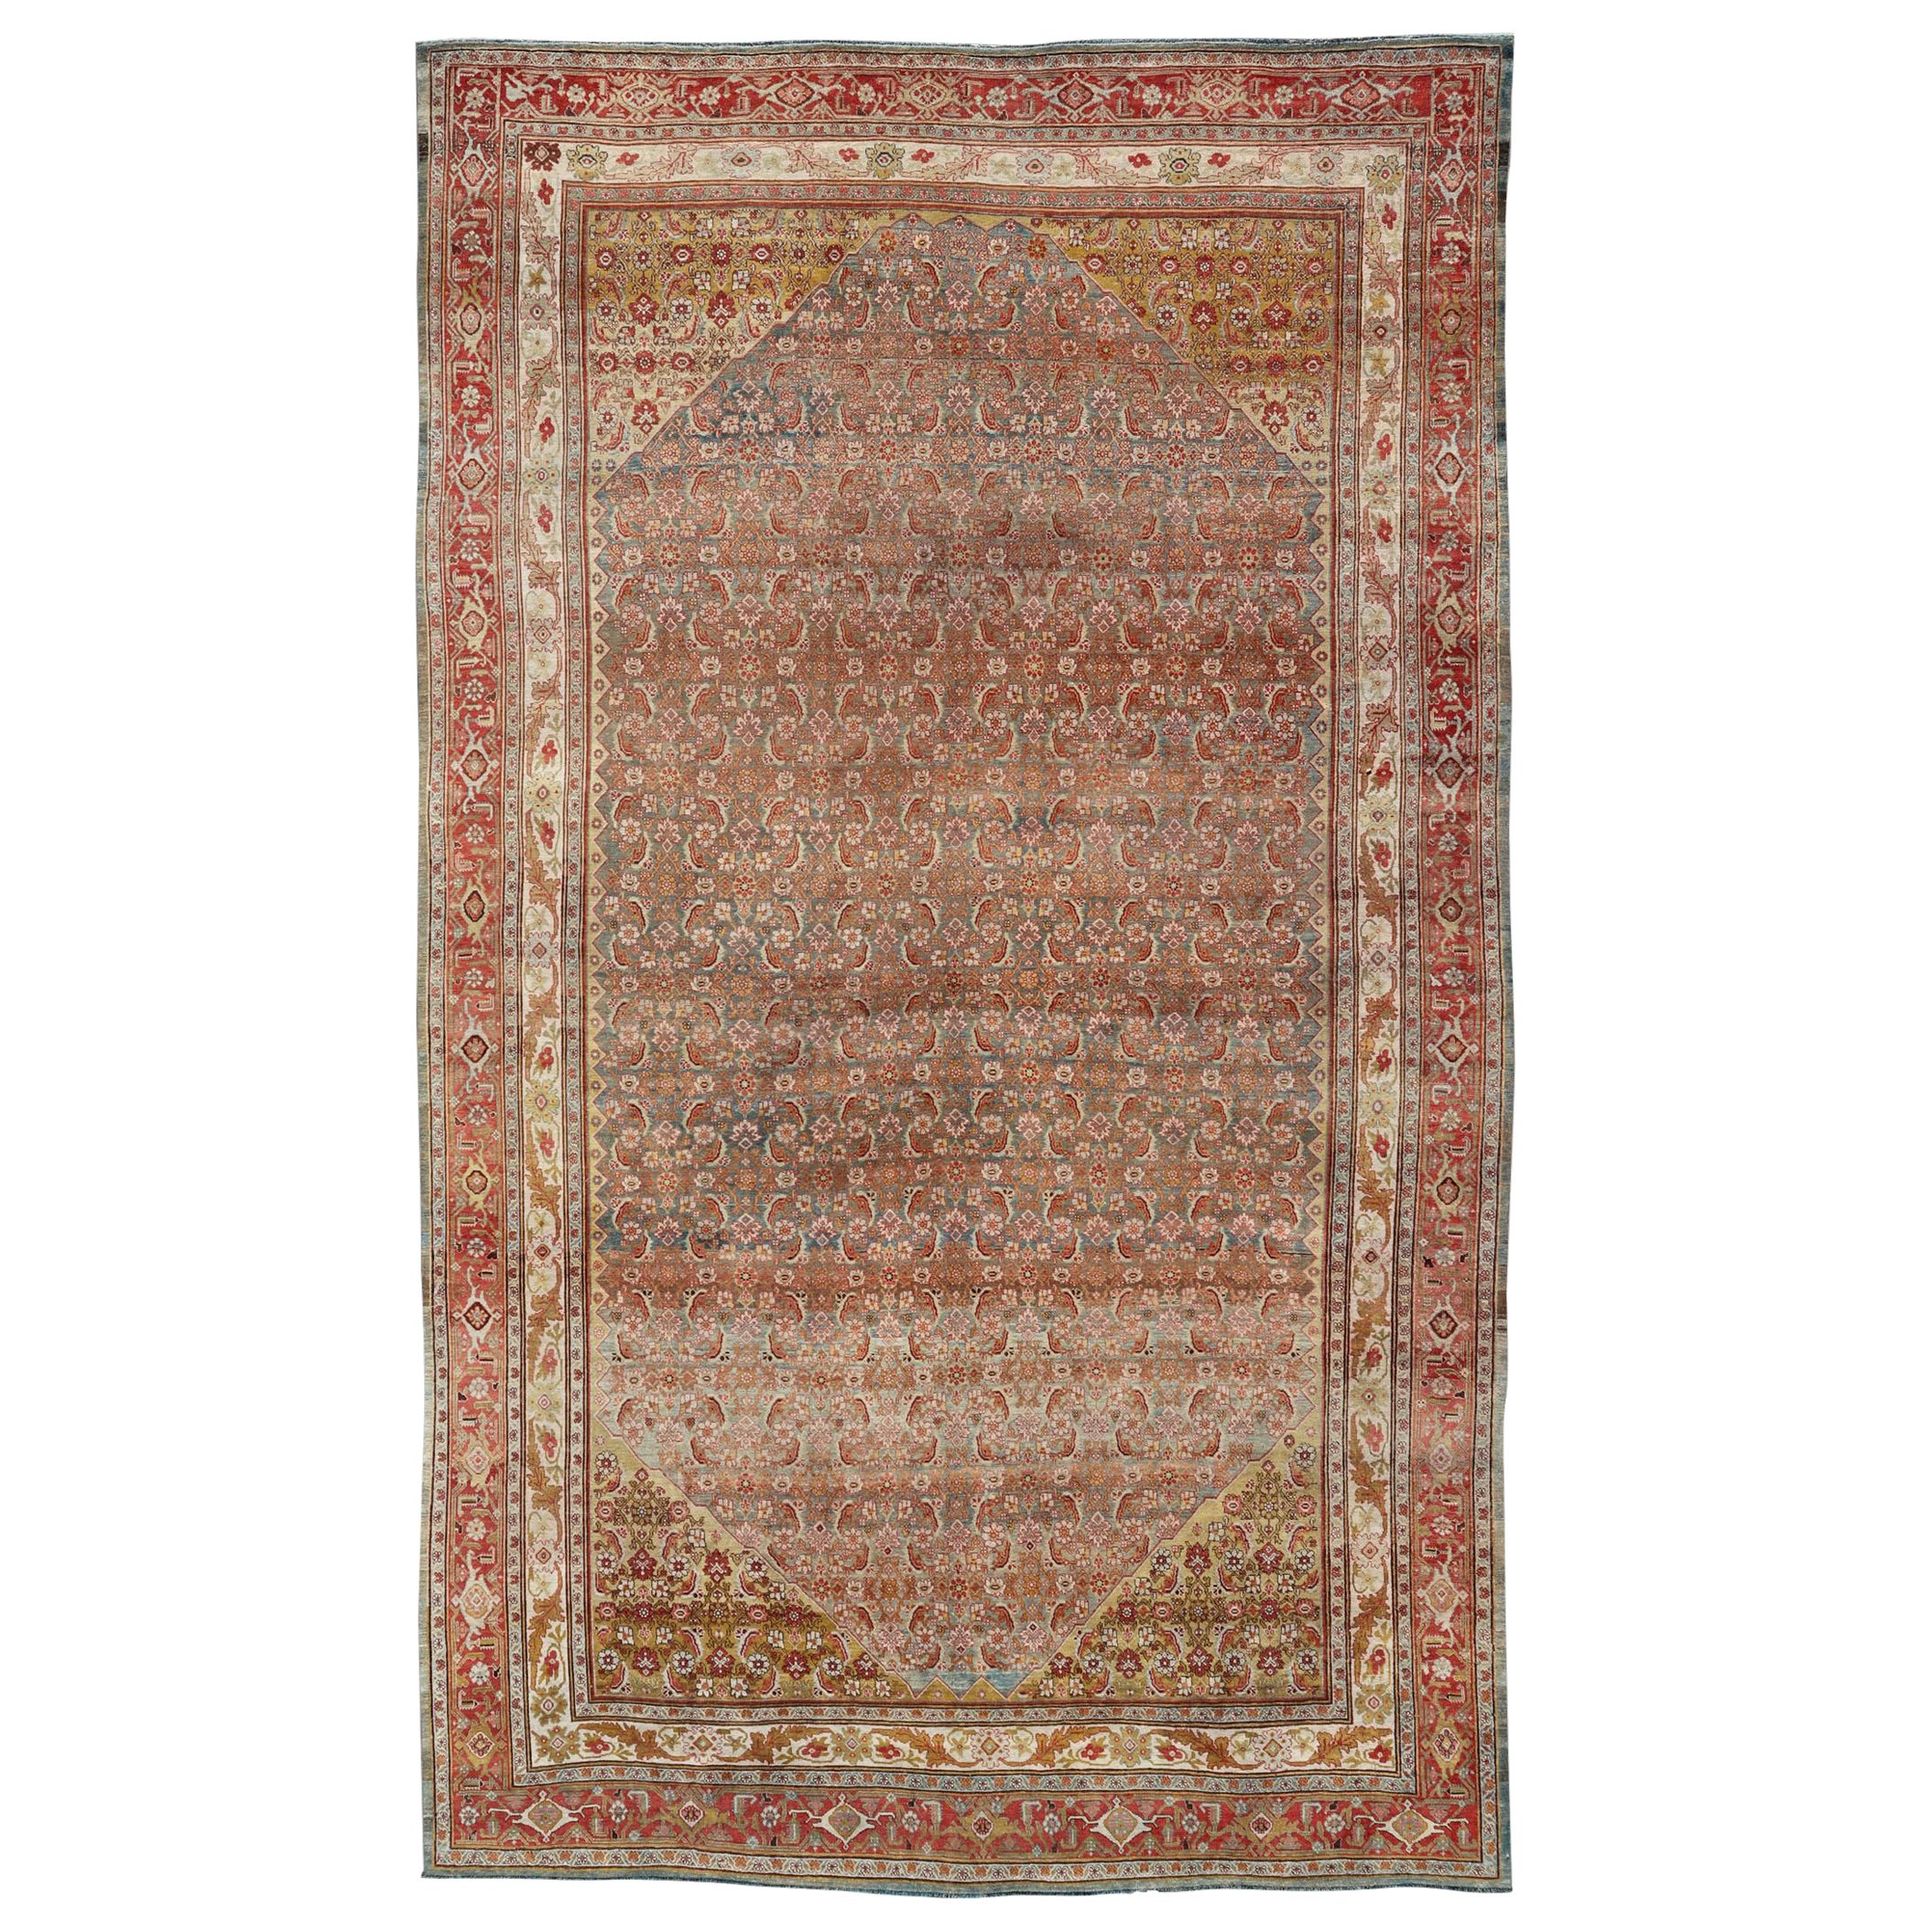 Grand tapis persan ancien Bidjar avec motif Herati dans des tons doux et des couleurs multiples